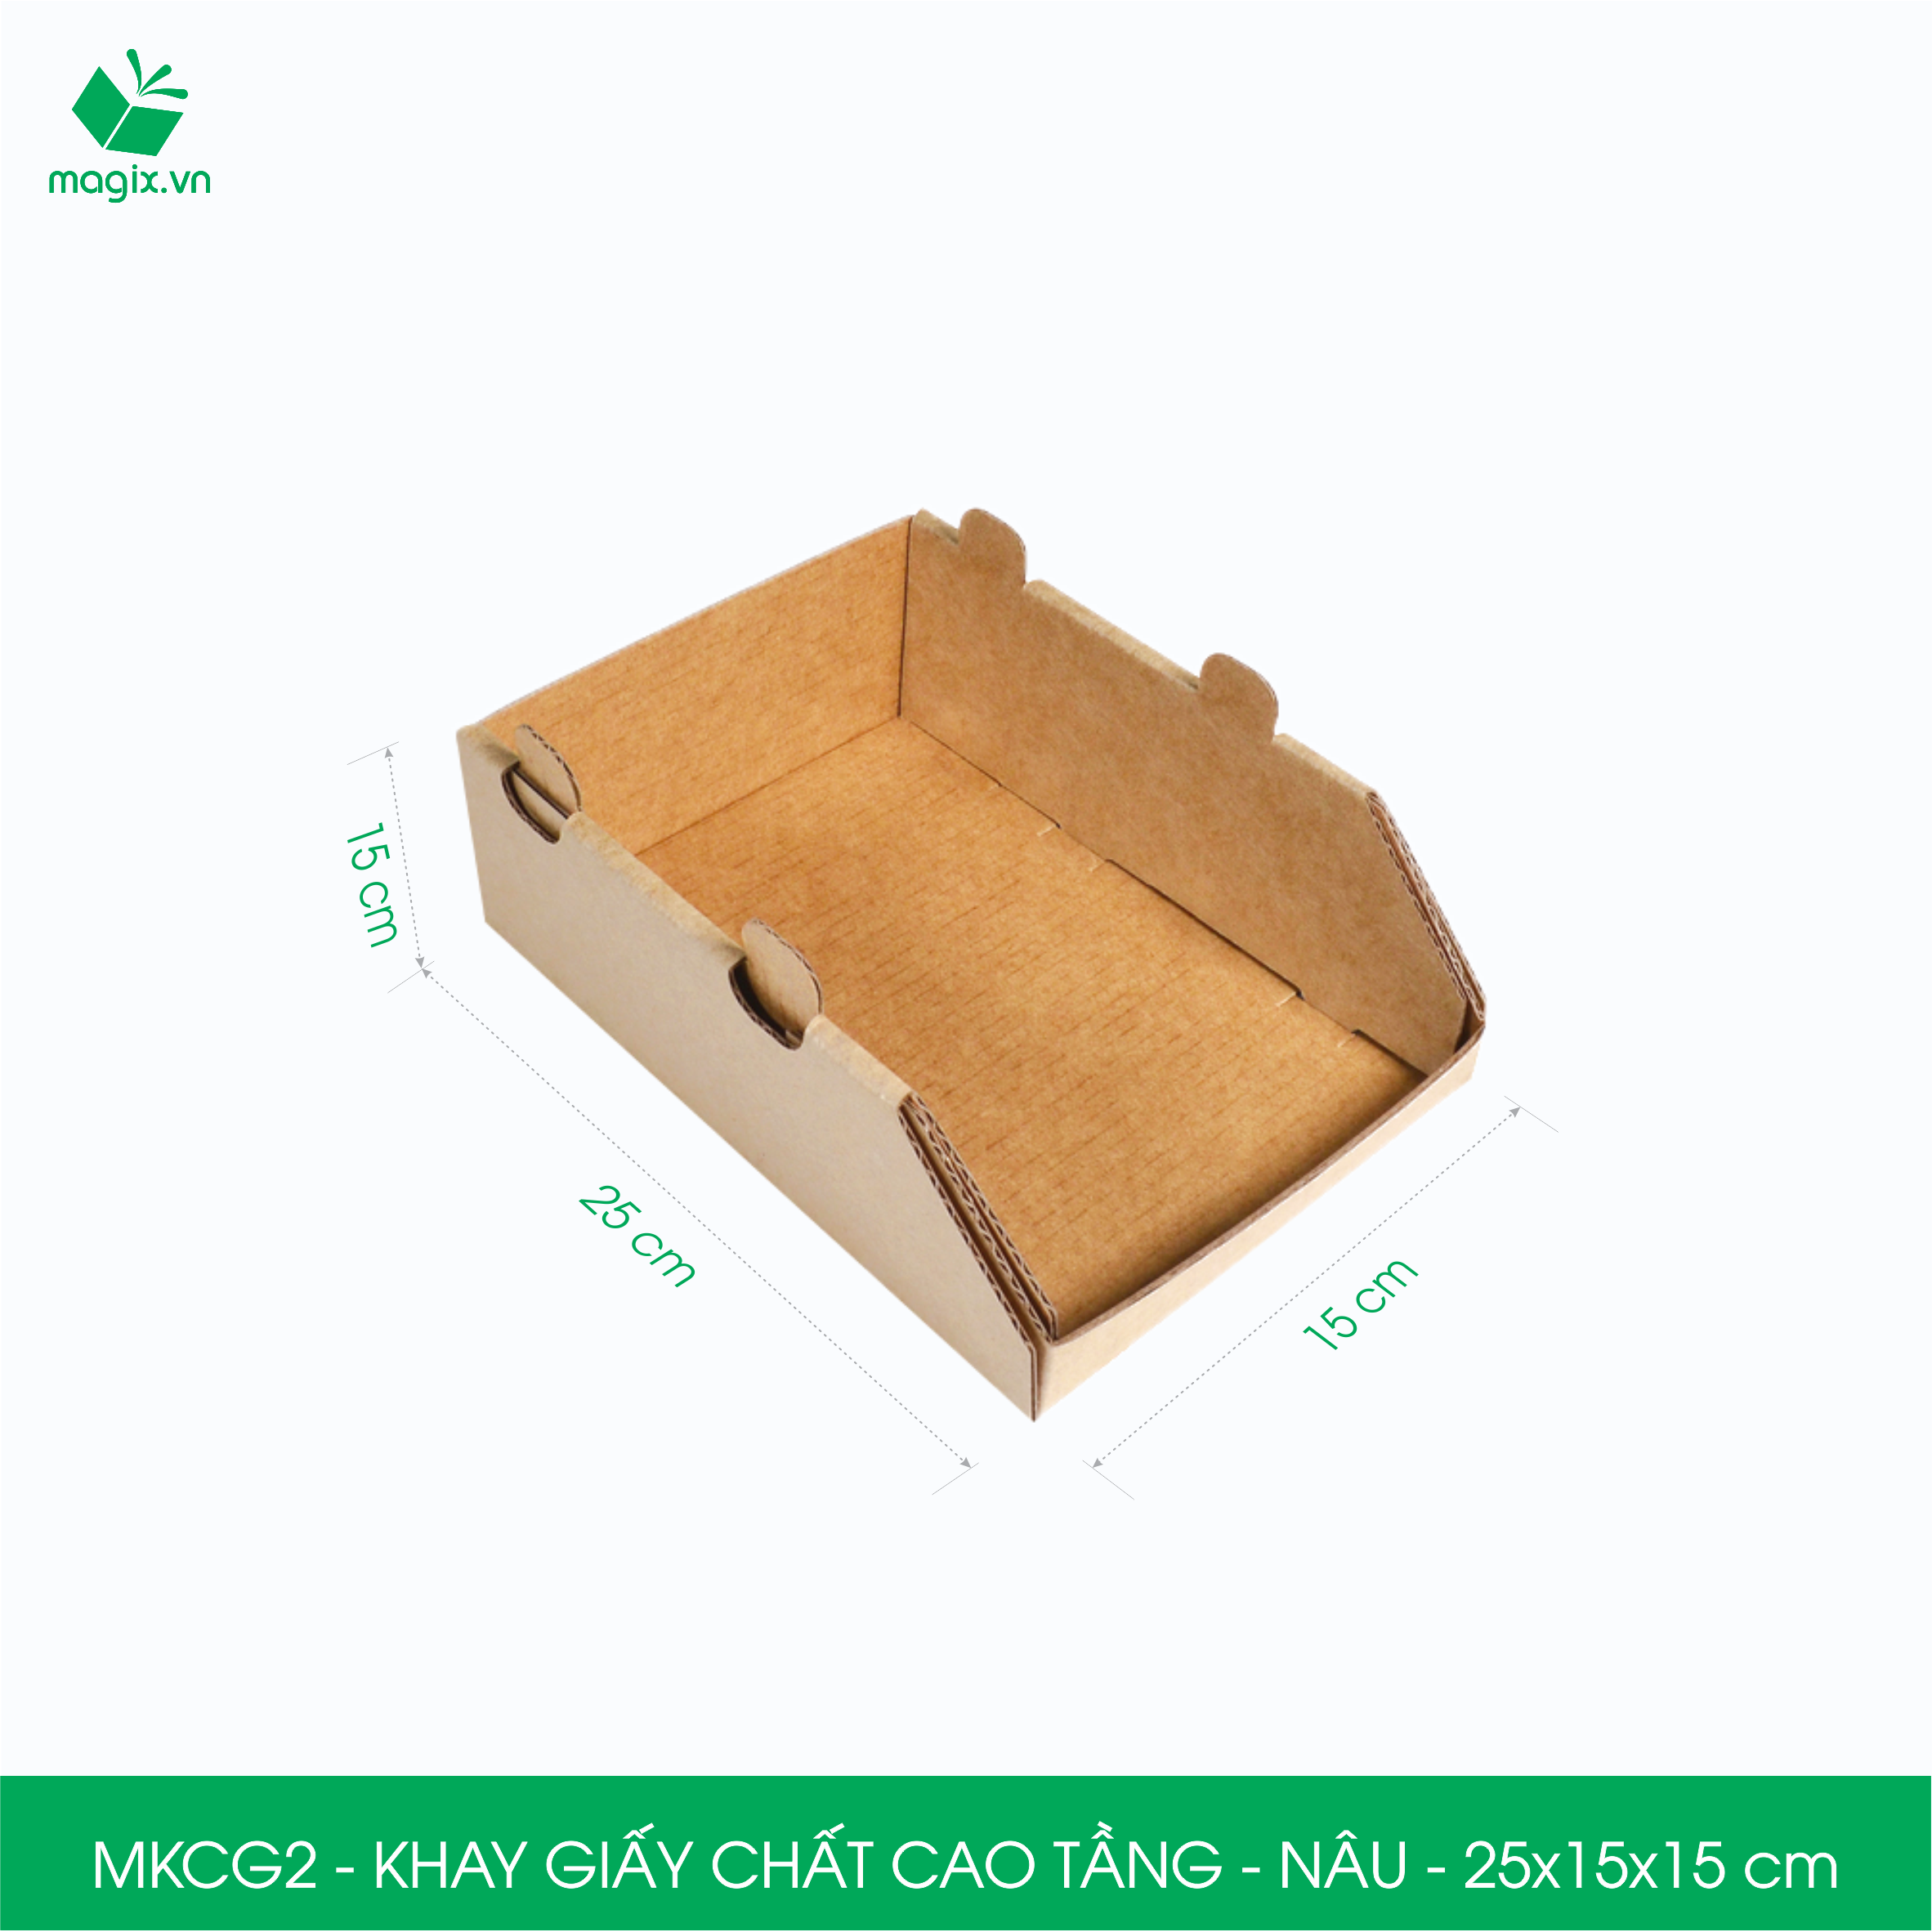 MKCG2 - 25x15x15 cm - 10 Khay giấy chất cao tầng bằng giấy carton siêu cứng, kệ giấy đựng đồ văn phòng, khay đựng dụng cụ, khay linh kiện, kệ phân loại dụng cụ